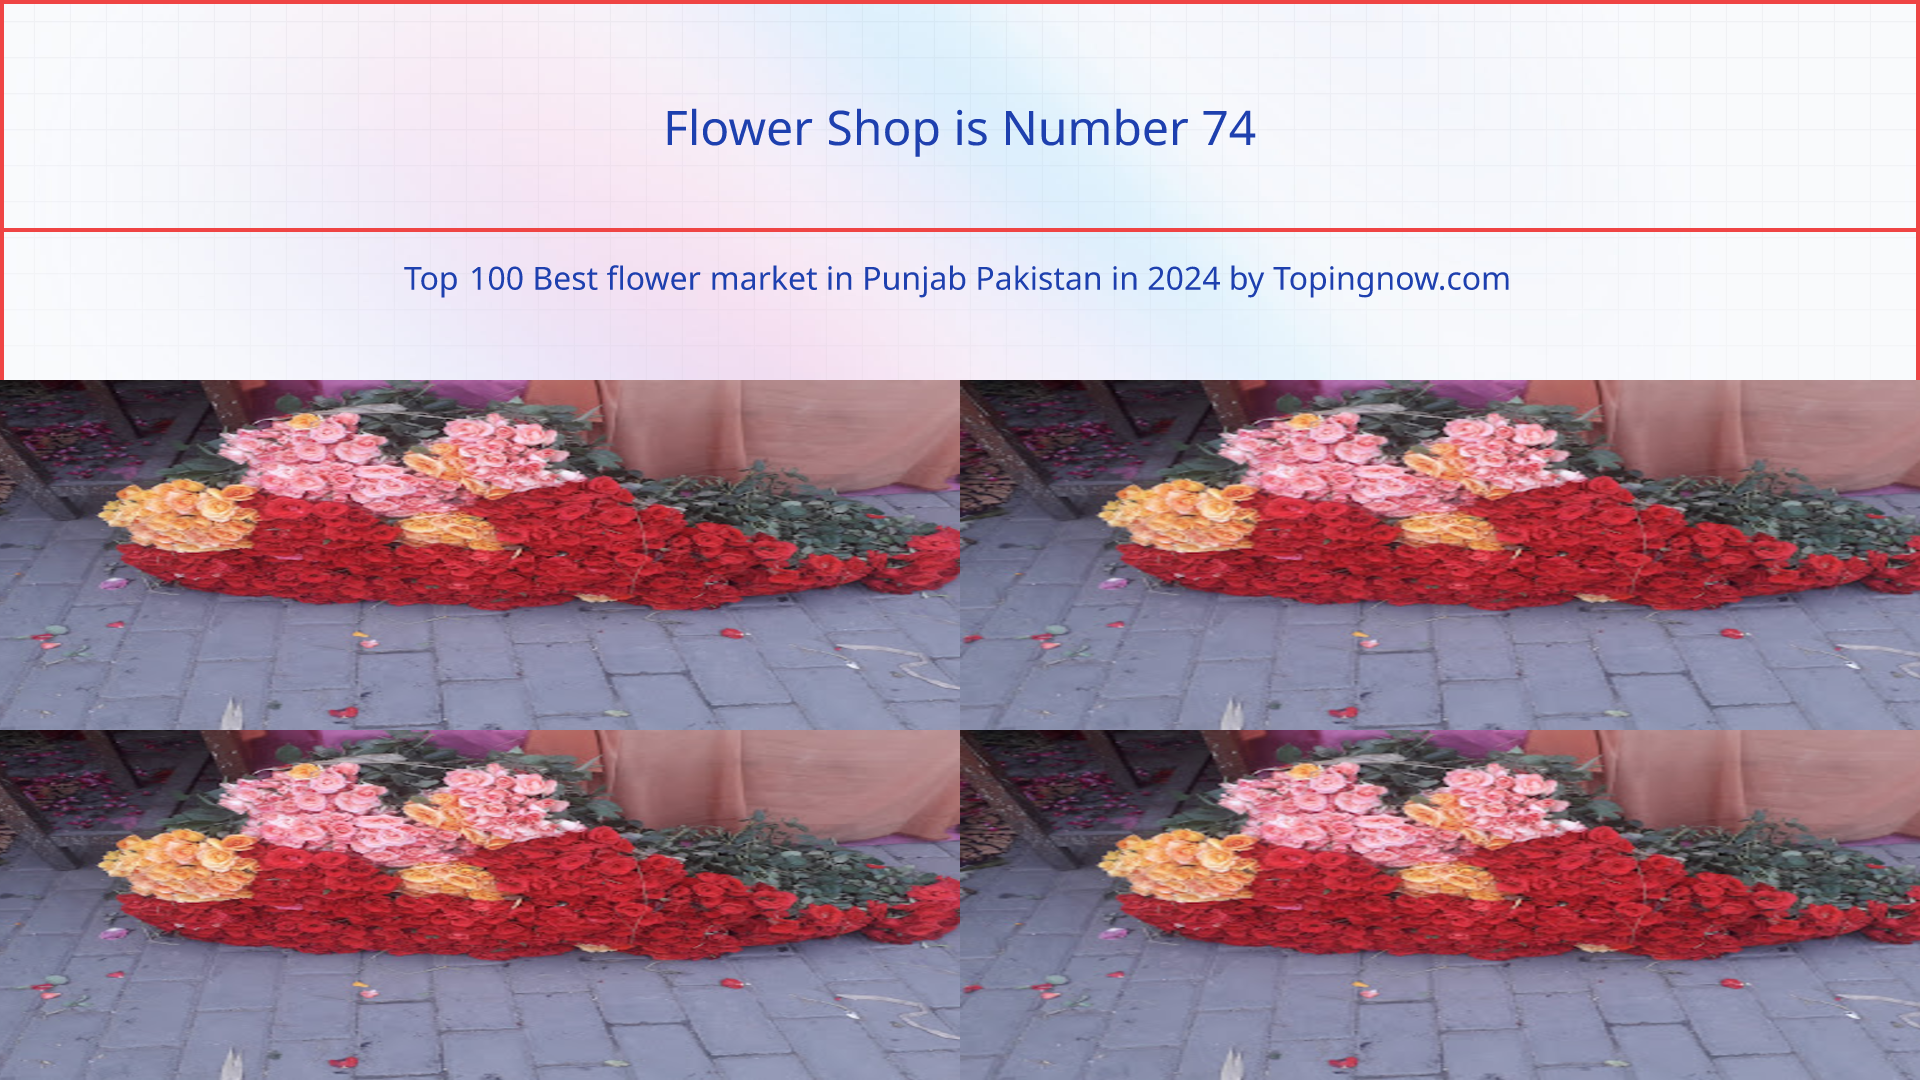 Flower Shop: Top 100 Best flower market in Punjab Pakistan in 2024